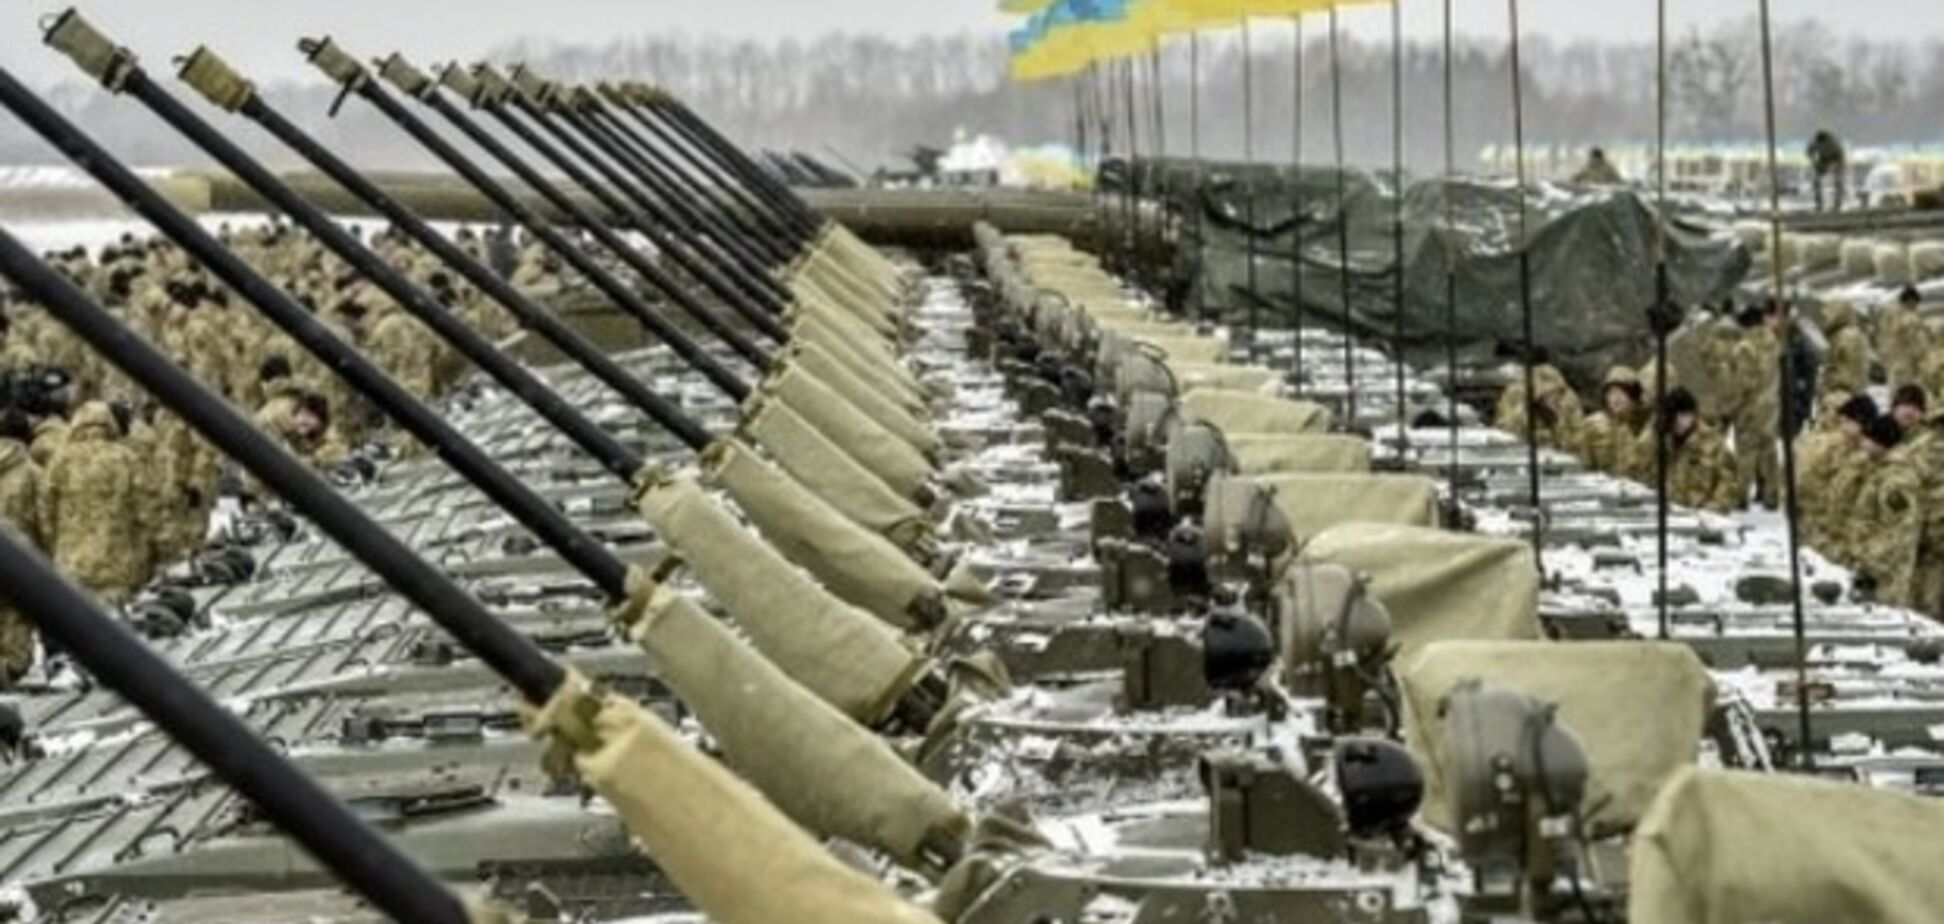 Йдеться про мільярди: названі скажені суми 'заробітку' топ-чиновників на оборонці України